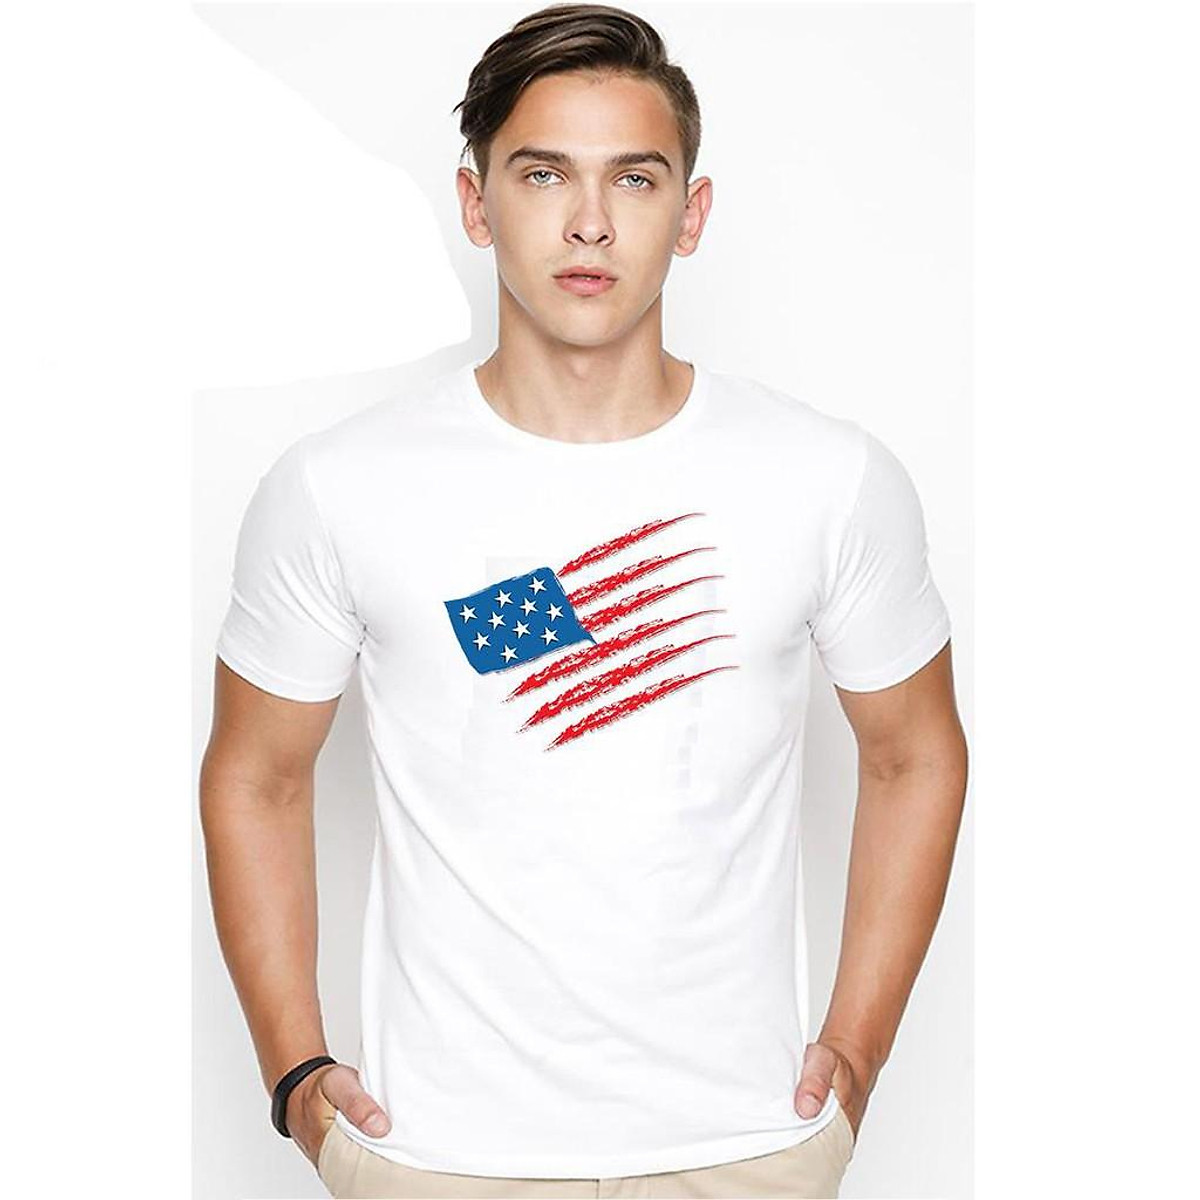 Áo thun in hình cờ Mỹ: Bạn là fan hâm mộ hình ảnh cờ Mỹ và muốn thể hiện tình yêu của mình? Với thiết kế độc đáo, áo thun in hình cờ Mỹ chắc chắn sẽ là món đồ thời trang yêu thích của bạn. Hãy xem ảnh để chọn cho mình chiếc áo ưng ý nhất.